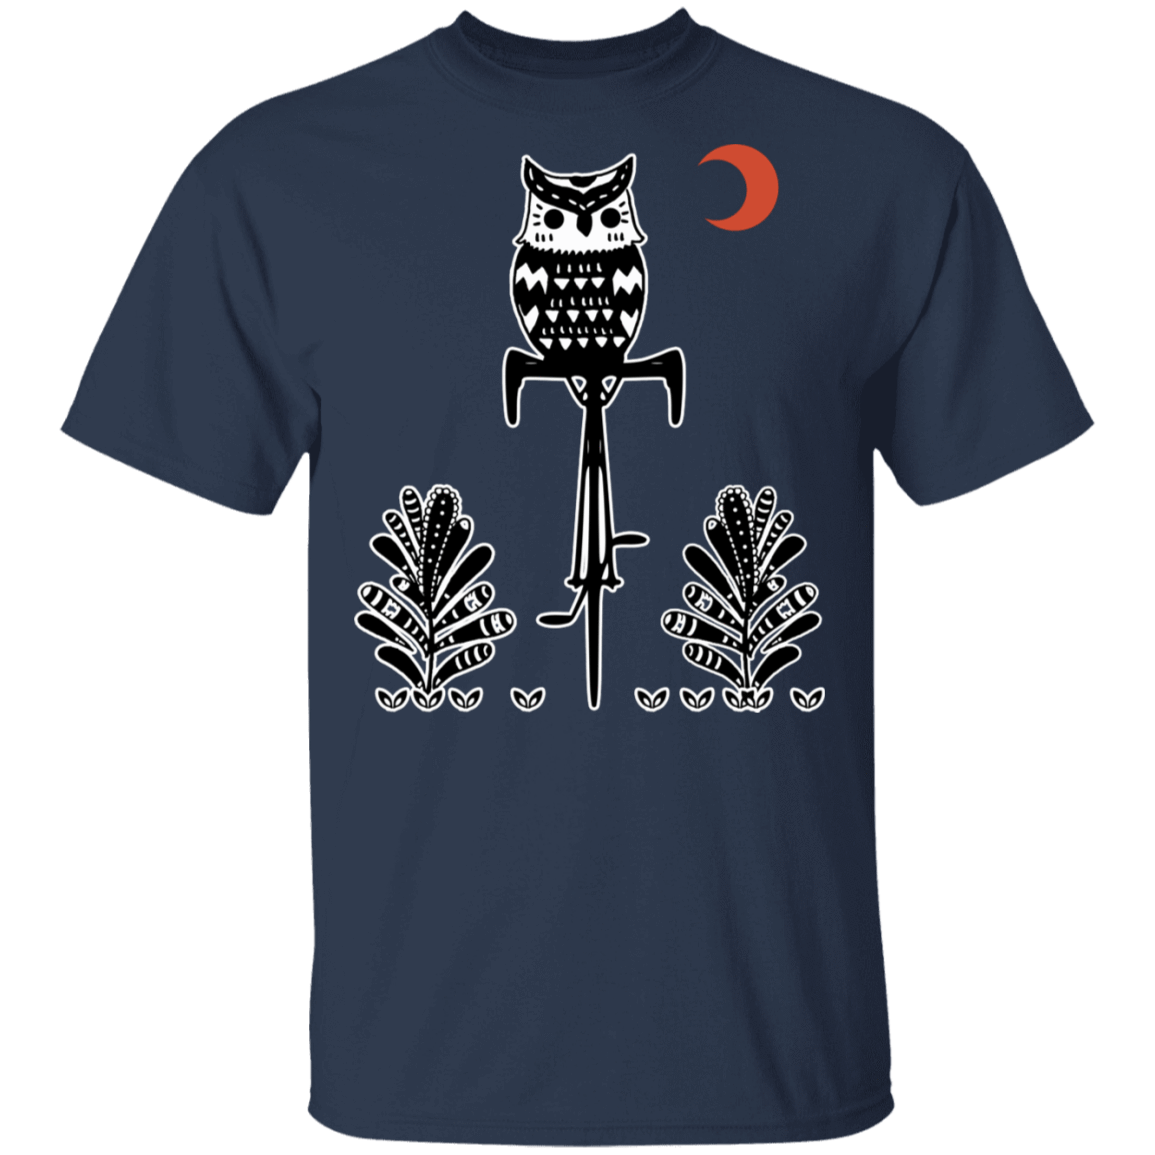 T-Shirts Navy / S Barn Owl On A Bike T-Shirt